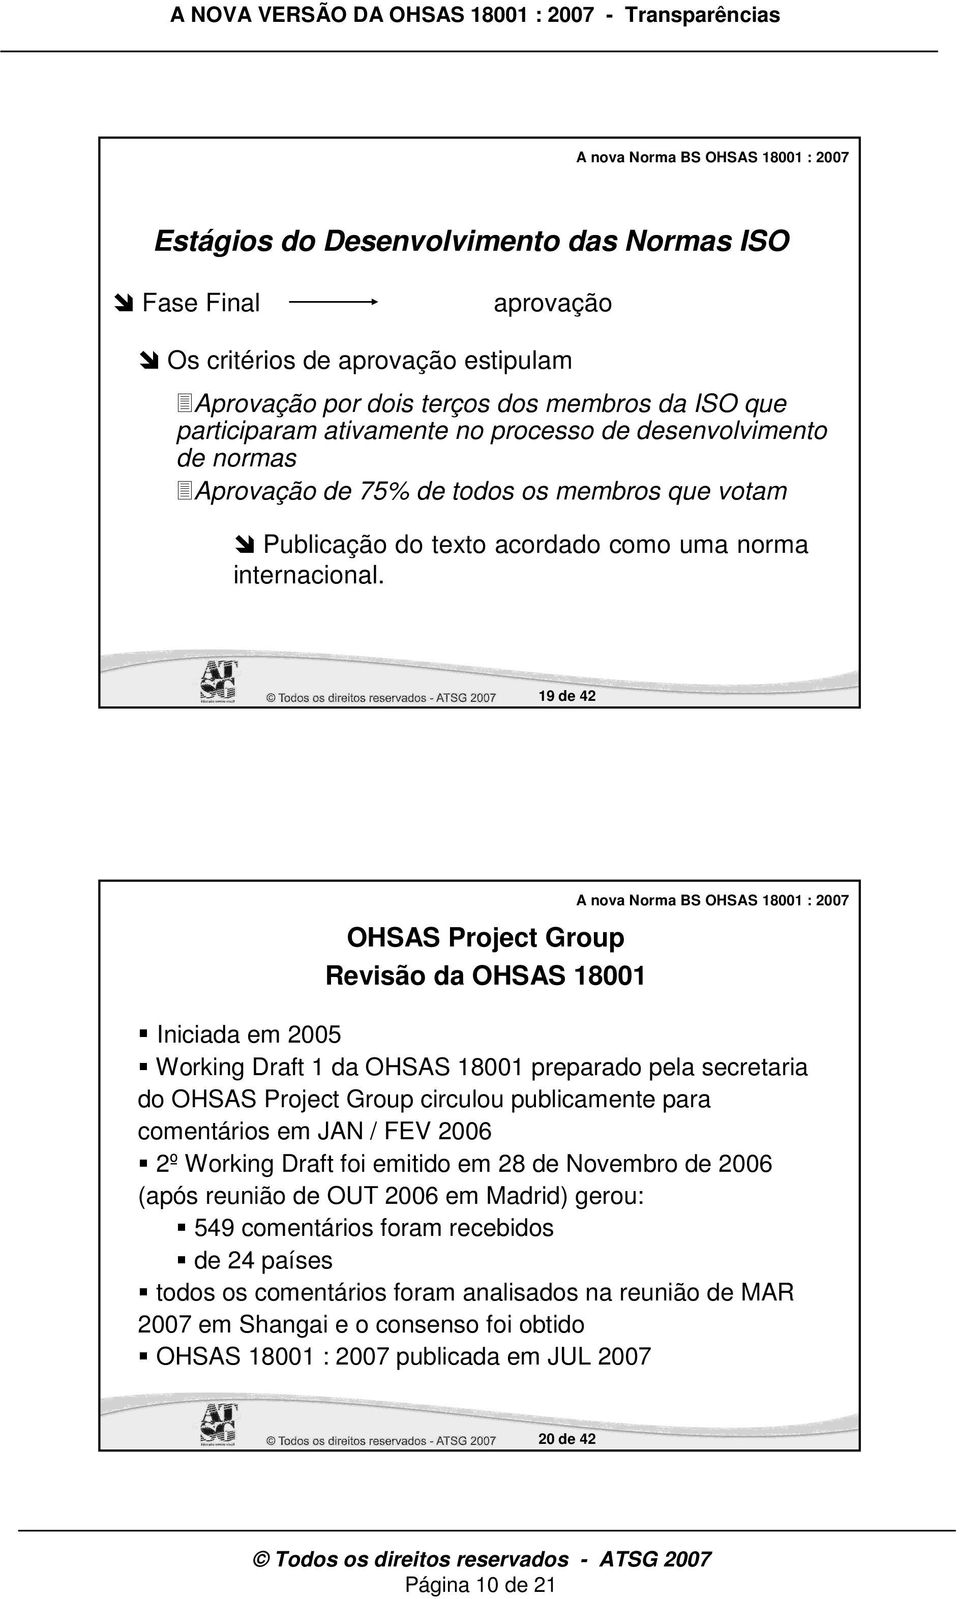 19 de 42 OHSAS Project Group Revisão da OHSAS 18001 Iniciada em 2005 Working Draft 1 da OHSAS 18001 preparado pela secretaria do OHSAS Project Group circulou publicamente para comentários em JAN /